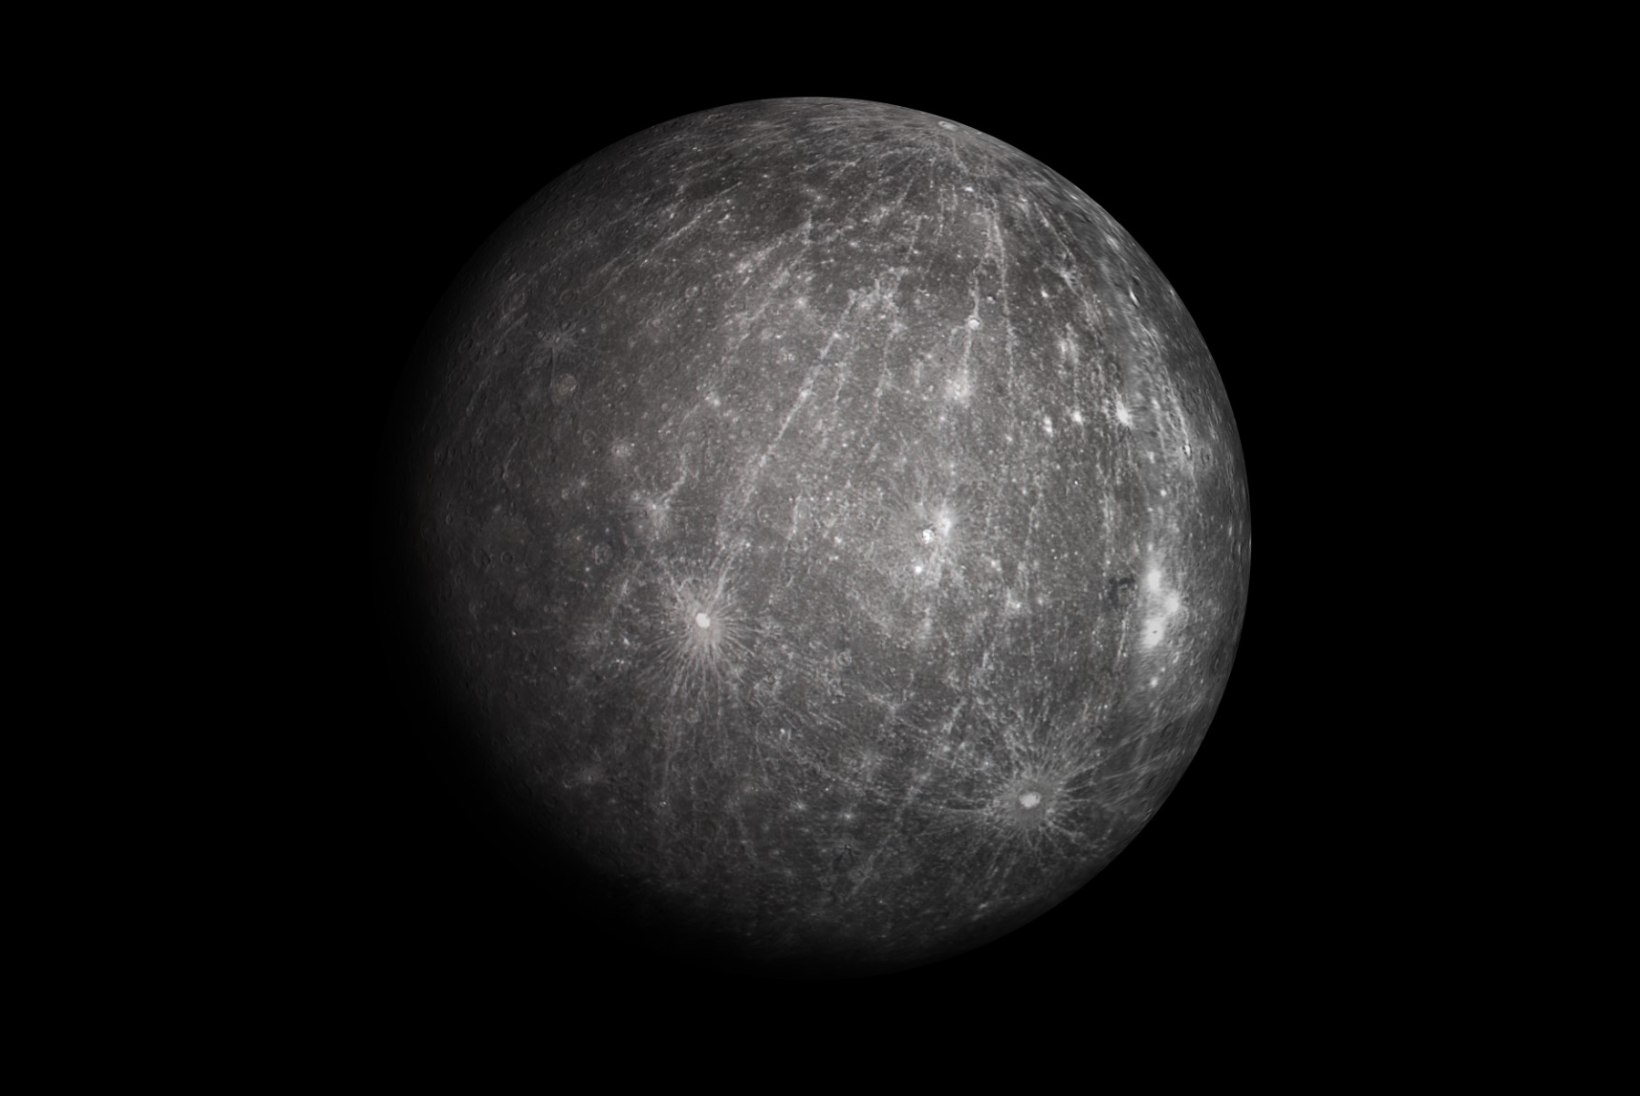 Täna kella 14 ajal alustas Merkuur liikumist üle Päikese. Haruldane taevanähtus on vaadeldav ka Eestis!